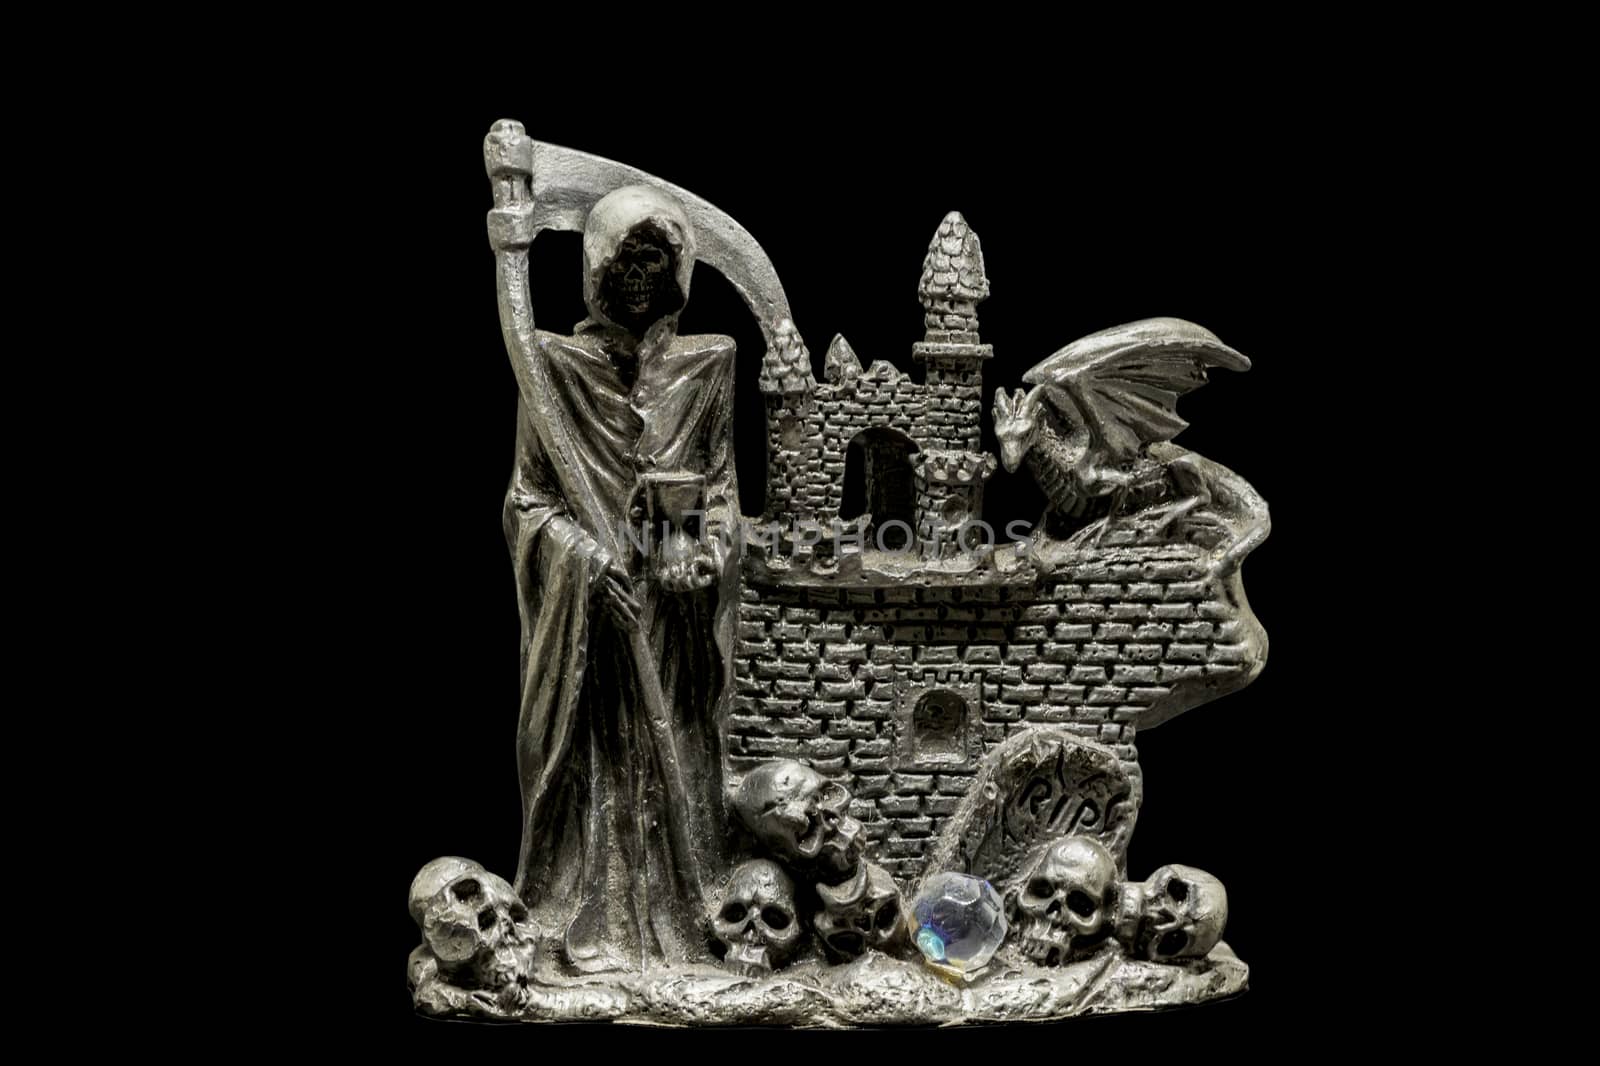 metal figurine of reaper with skulls